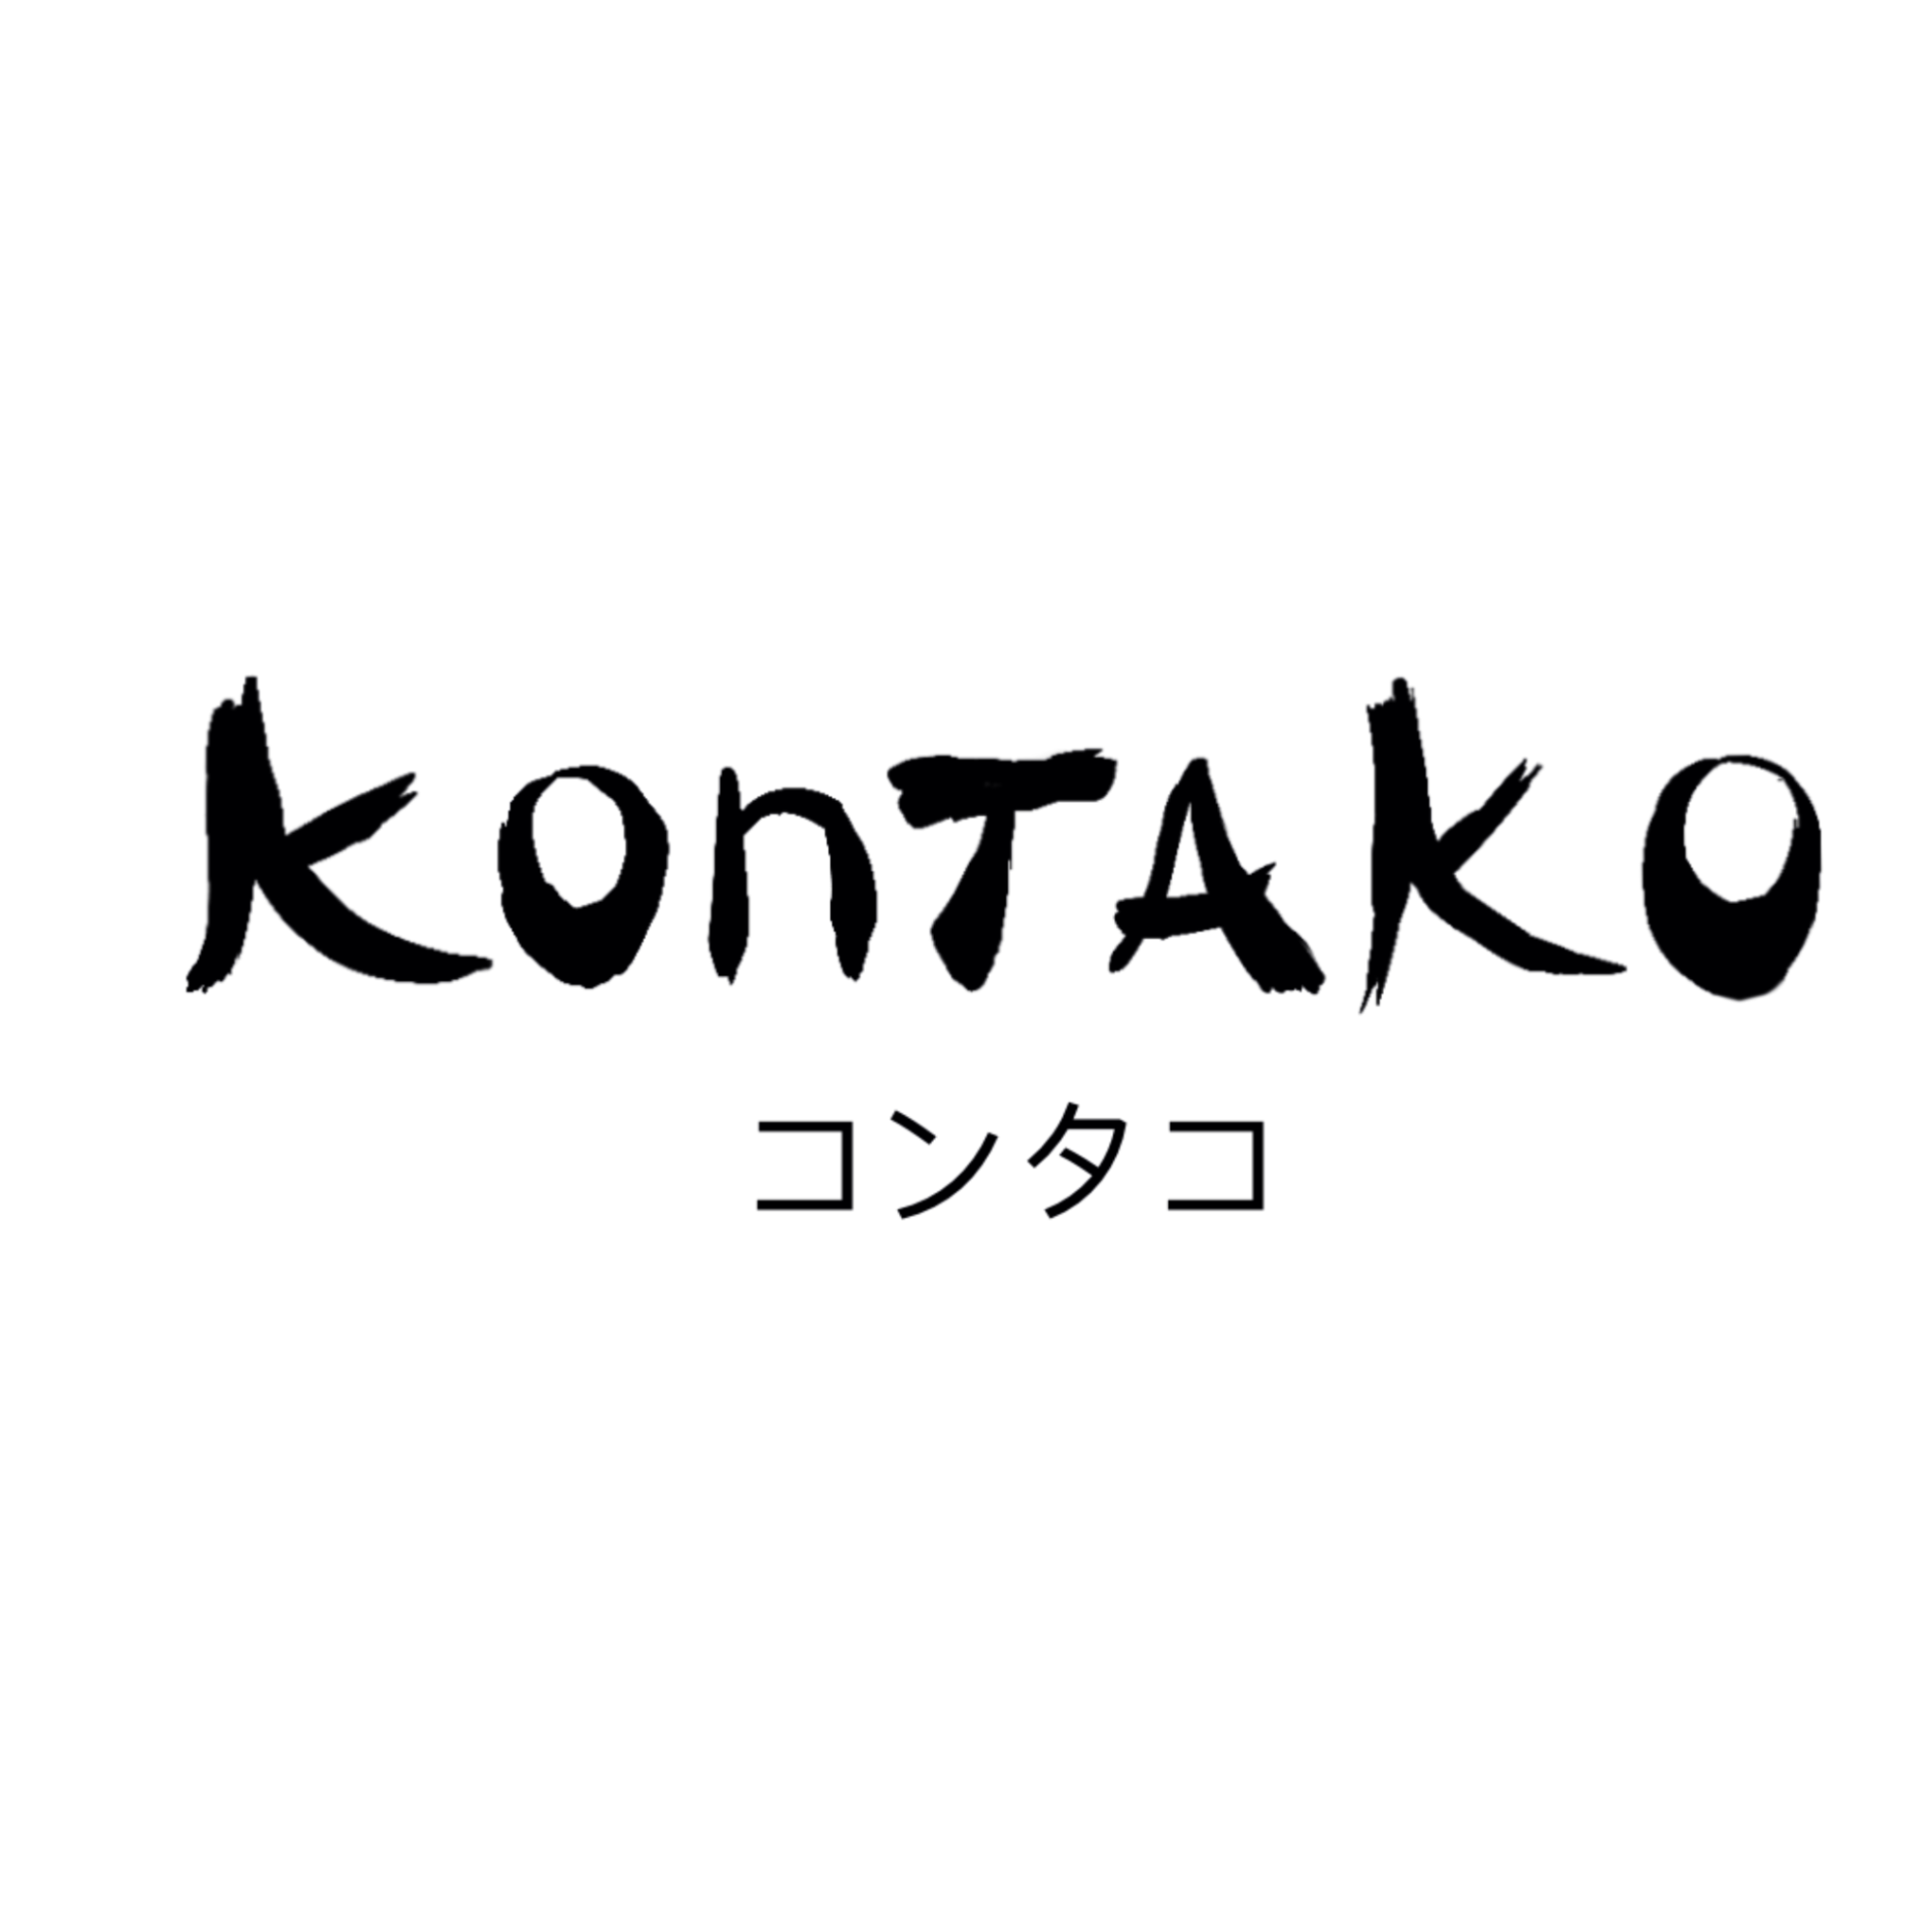 Kontako, del “anison” al rock